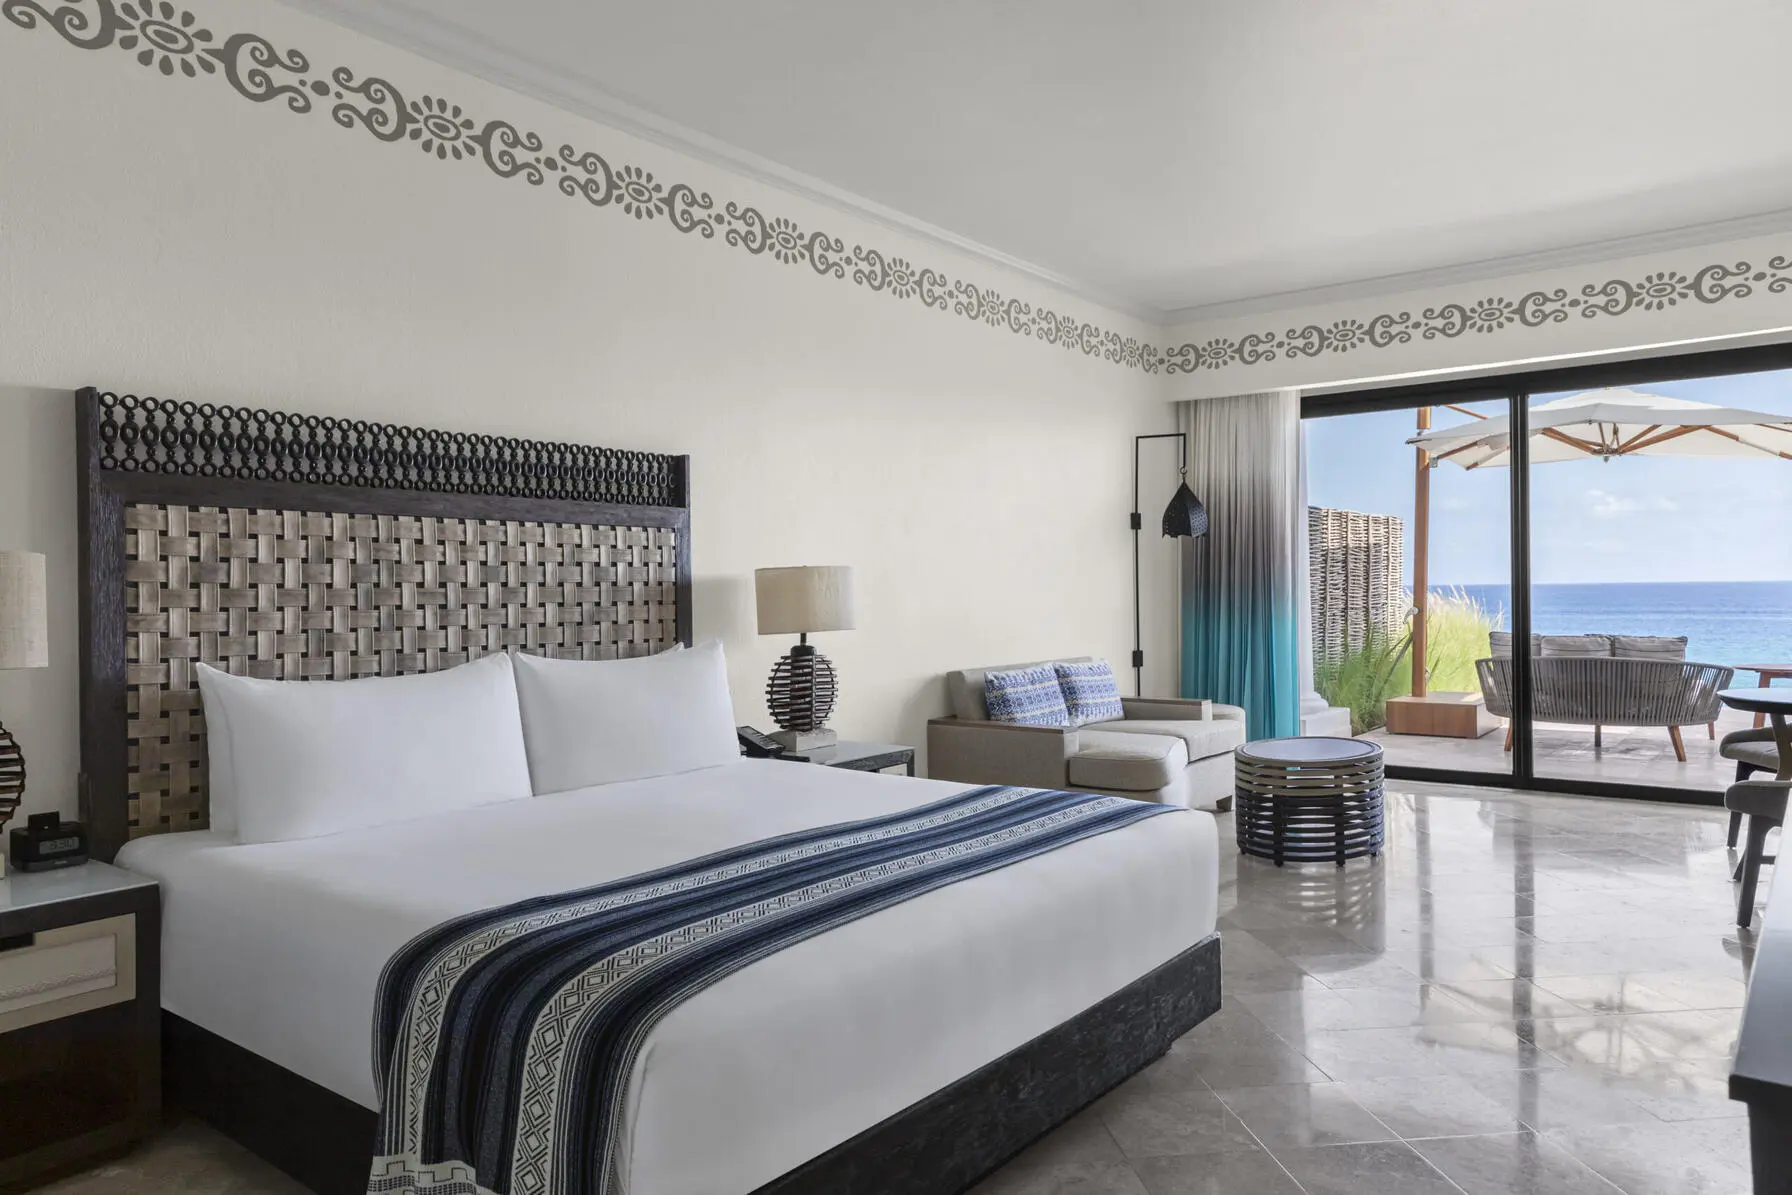 imagen de la habitación con cama doble sala de estar con balcón con vista al mar